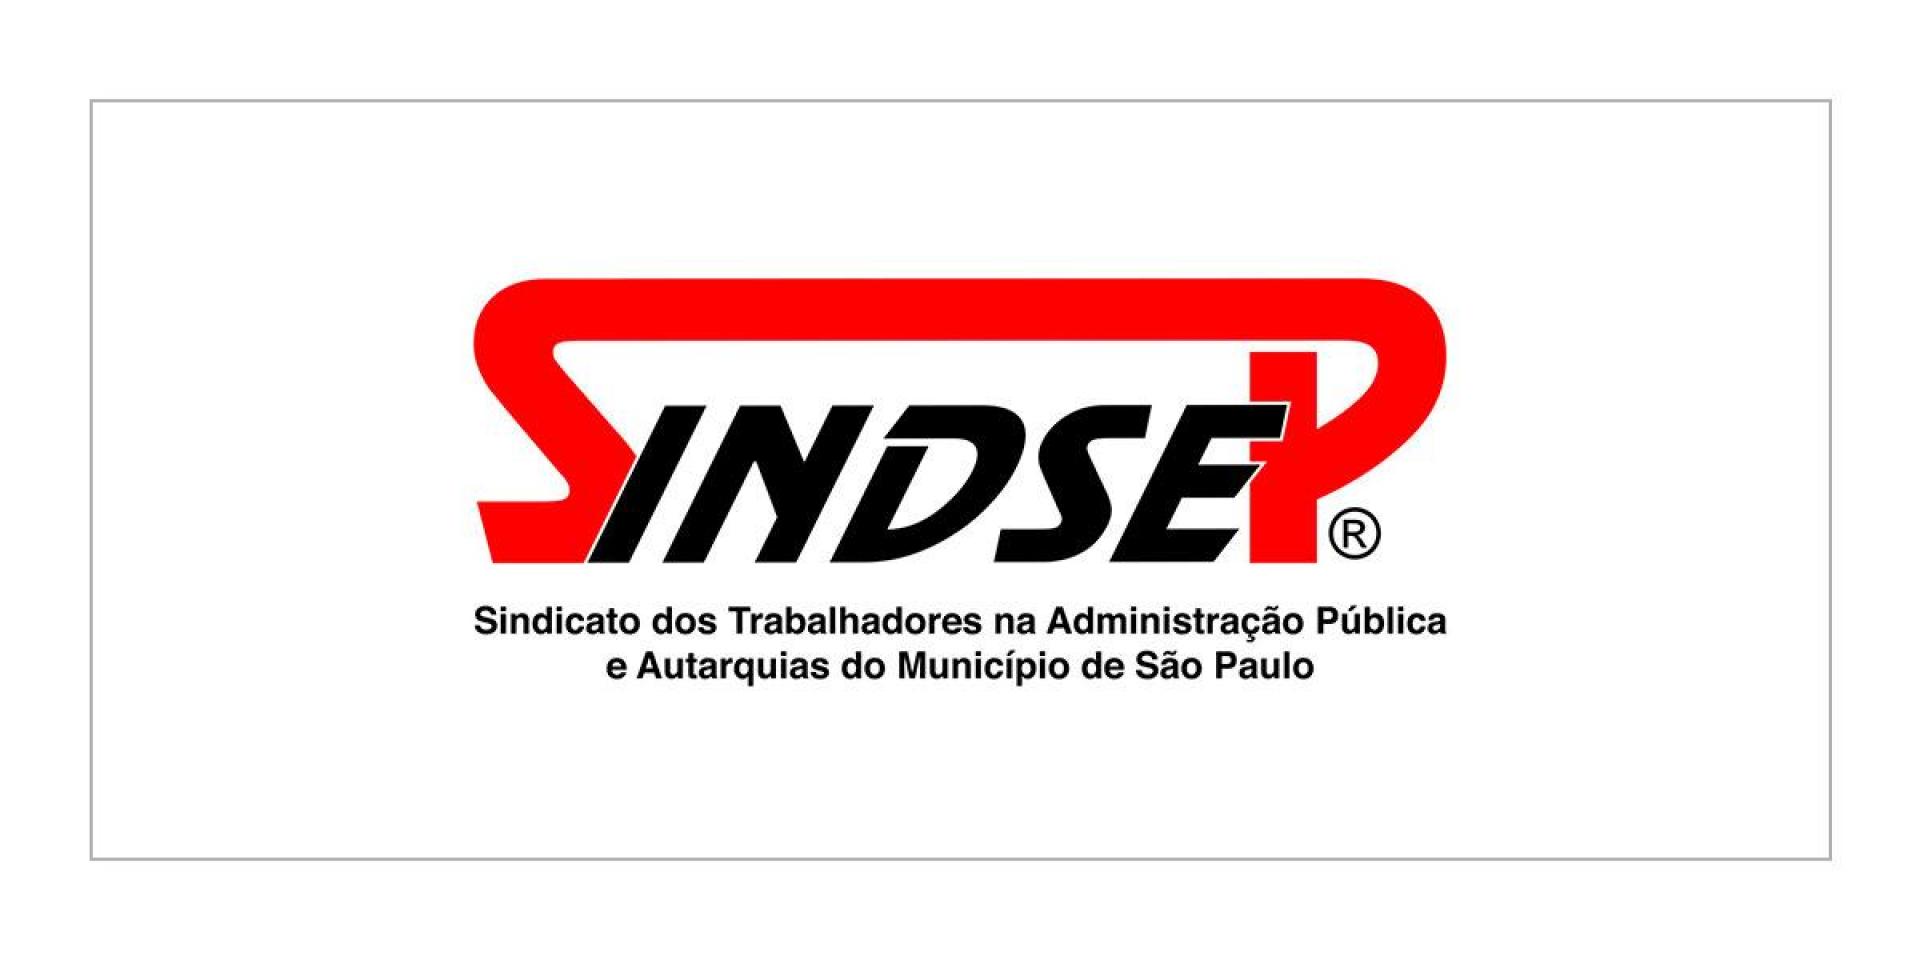 Sindicato dos Trabalhadores na Administração Pública e Autarquias no Município de São Paulo